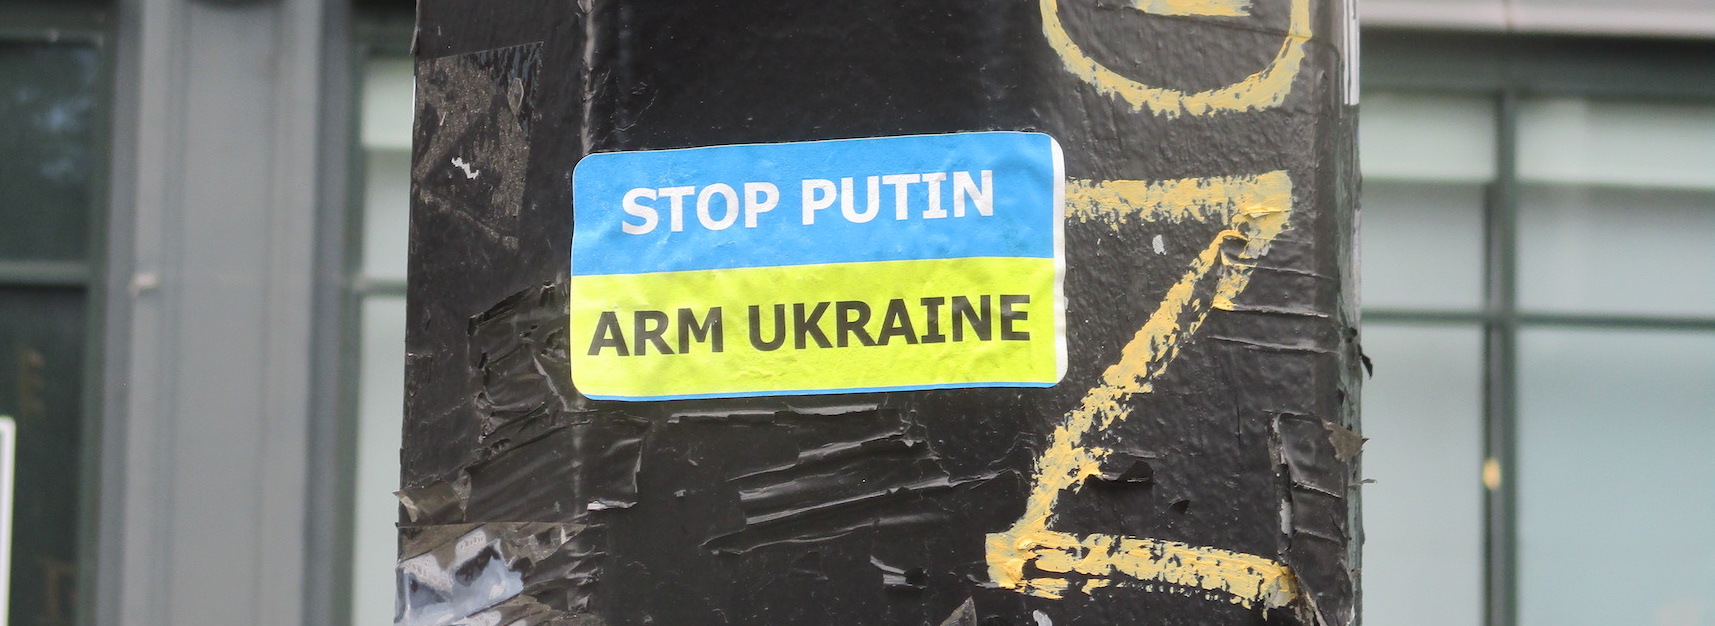 arm ukraine